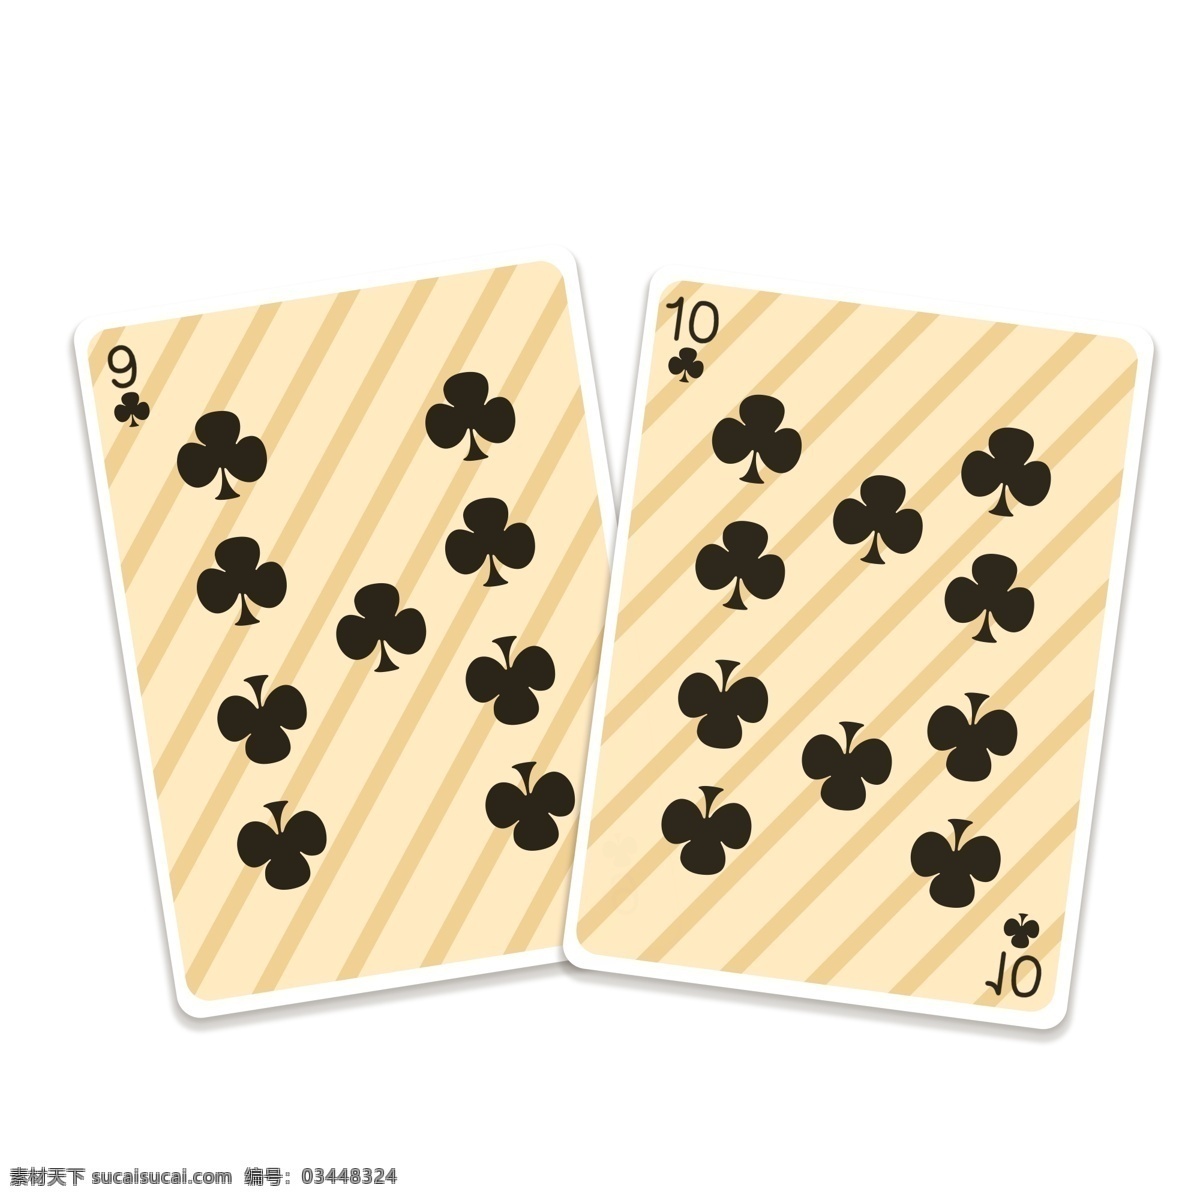 仿真 游戏 扑克牌 扑克 打牌 打扑克 娱乐游戏 娱乐 梅花 黑色 标志 数字 阿拉伯数字 纸牌 纸牌游戏